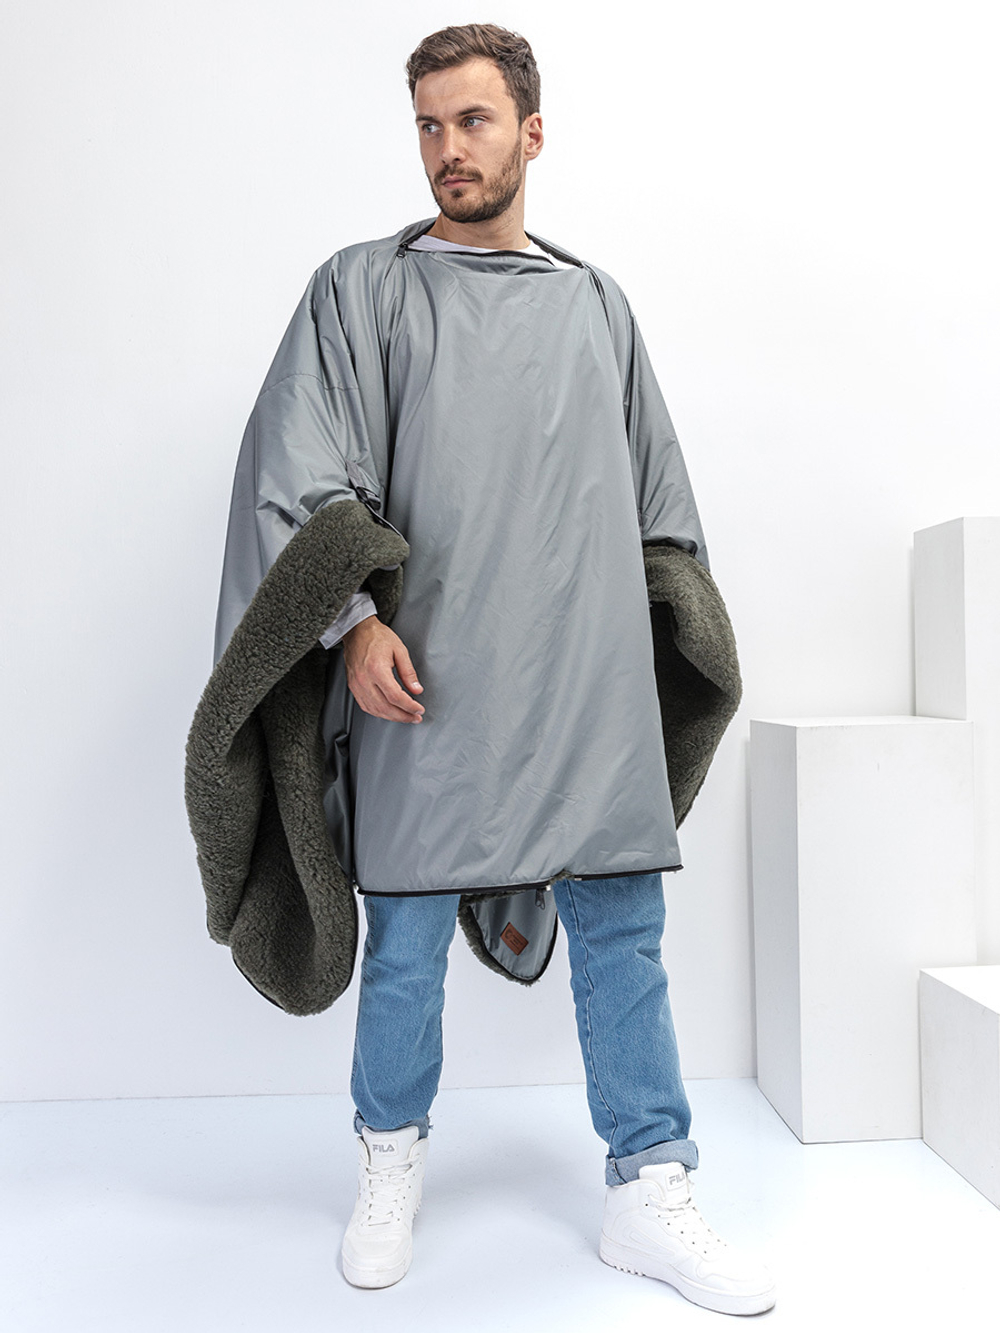 Многофункциональное одеяло-пончо-спальный мешок с непромокаемым верхом в чехле большое